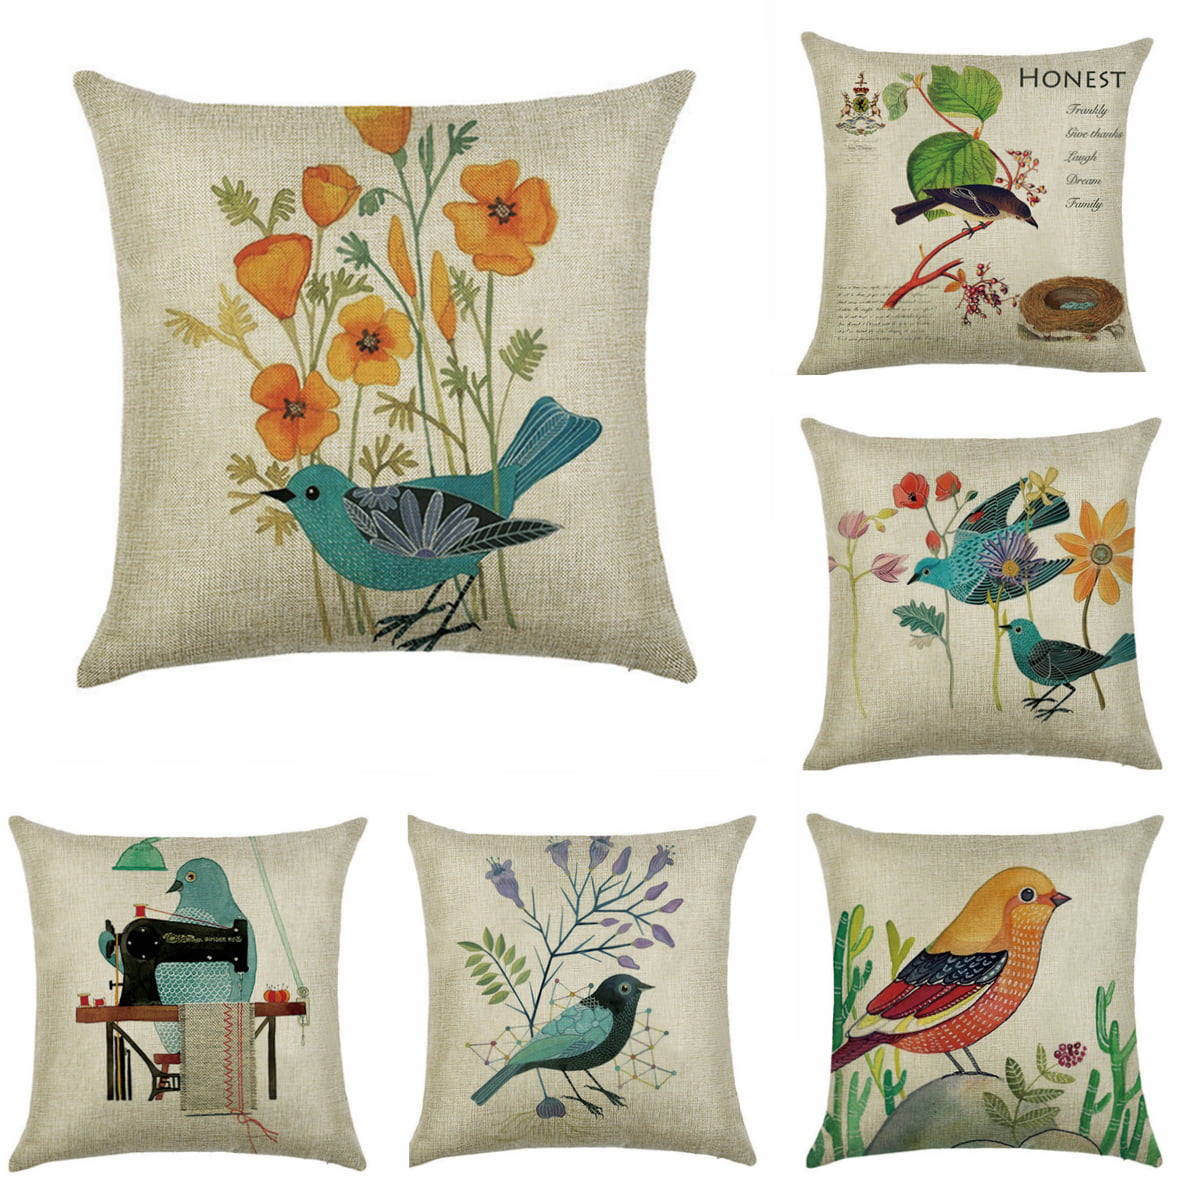 18" Birds Flowers Cushion Cover Pillow Case Cotton Linen Home Sofa Throw Decor 